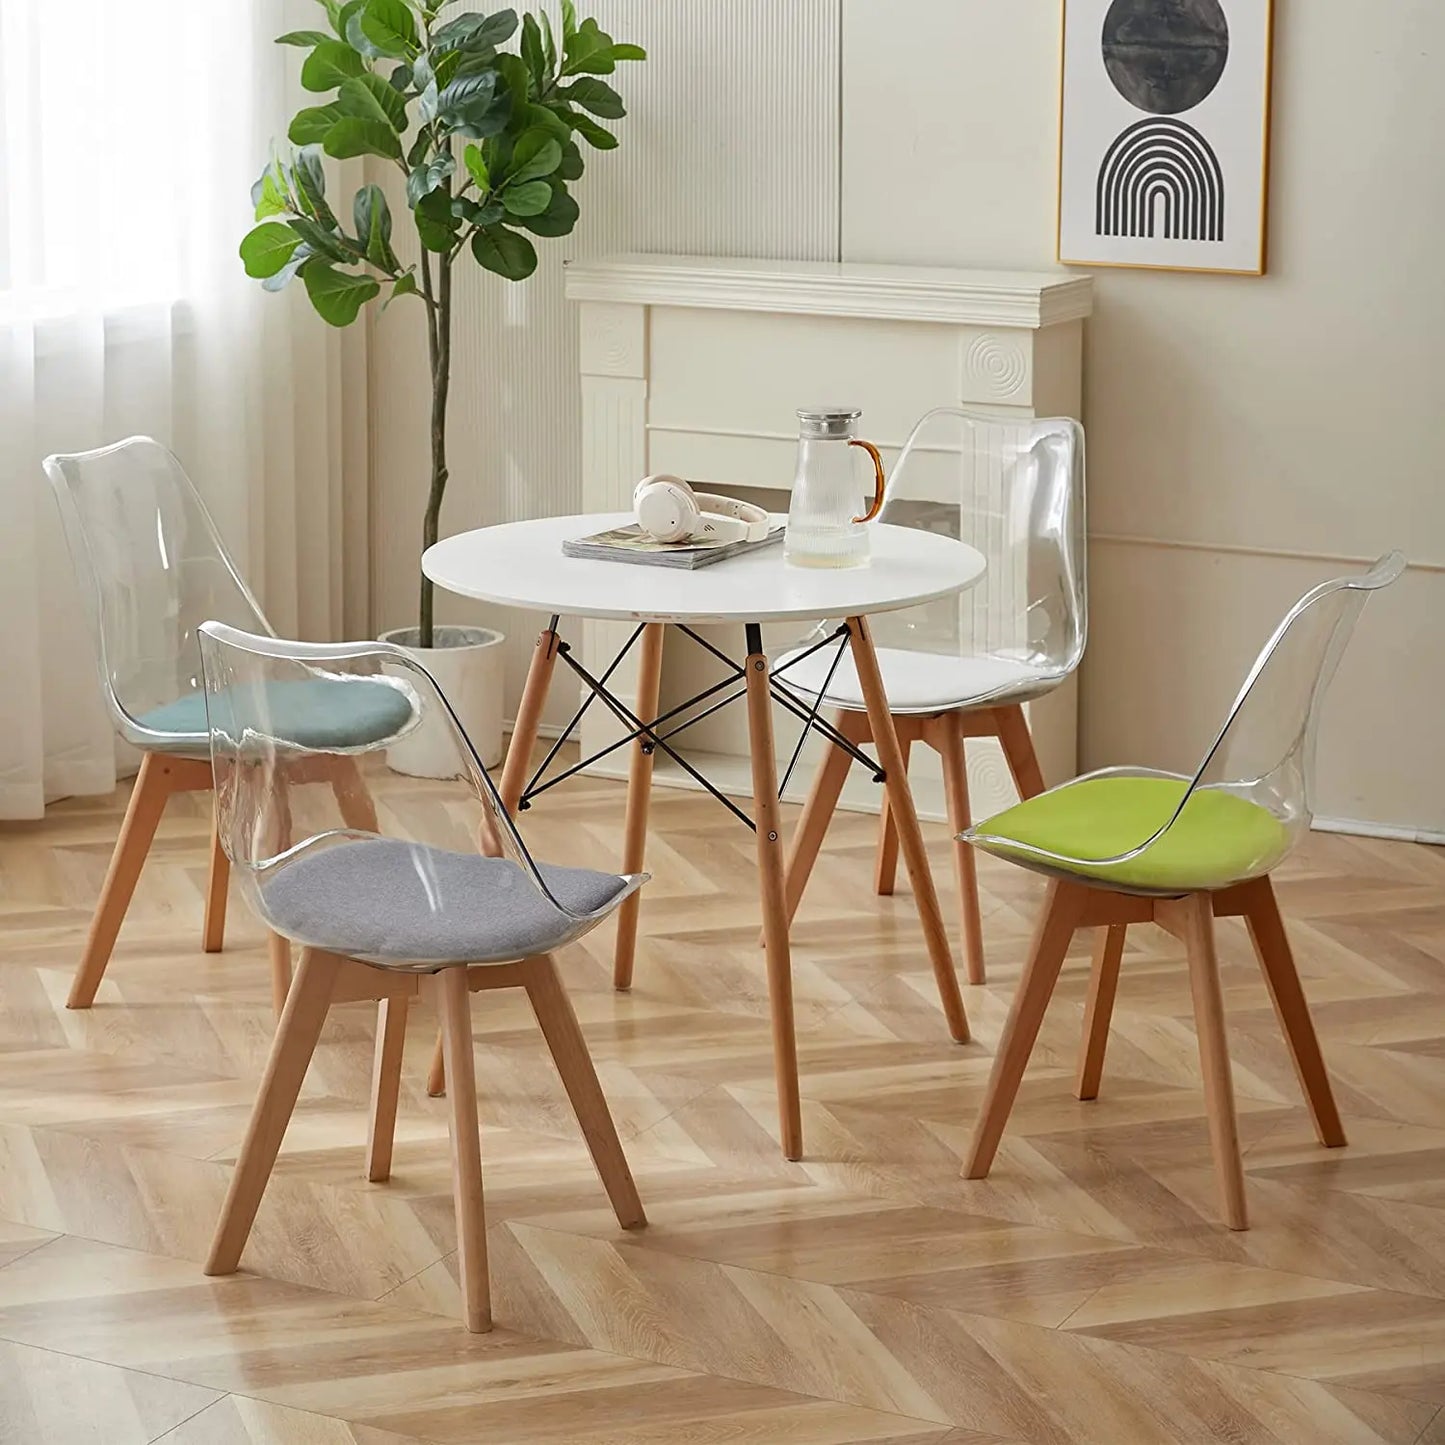 Set van 4 transparante eetkamerstoelen met houten poten. Moderne comfortabele PU-stoel voor keuken, slaapkamer, woonkamer. Geschikt voor thuis keukenmeubilair.